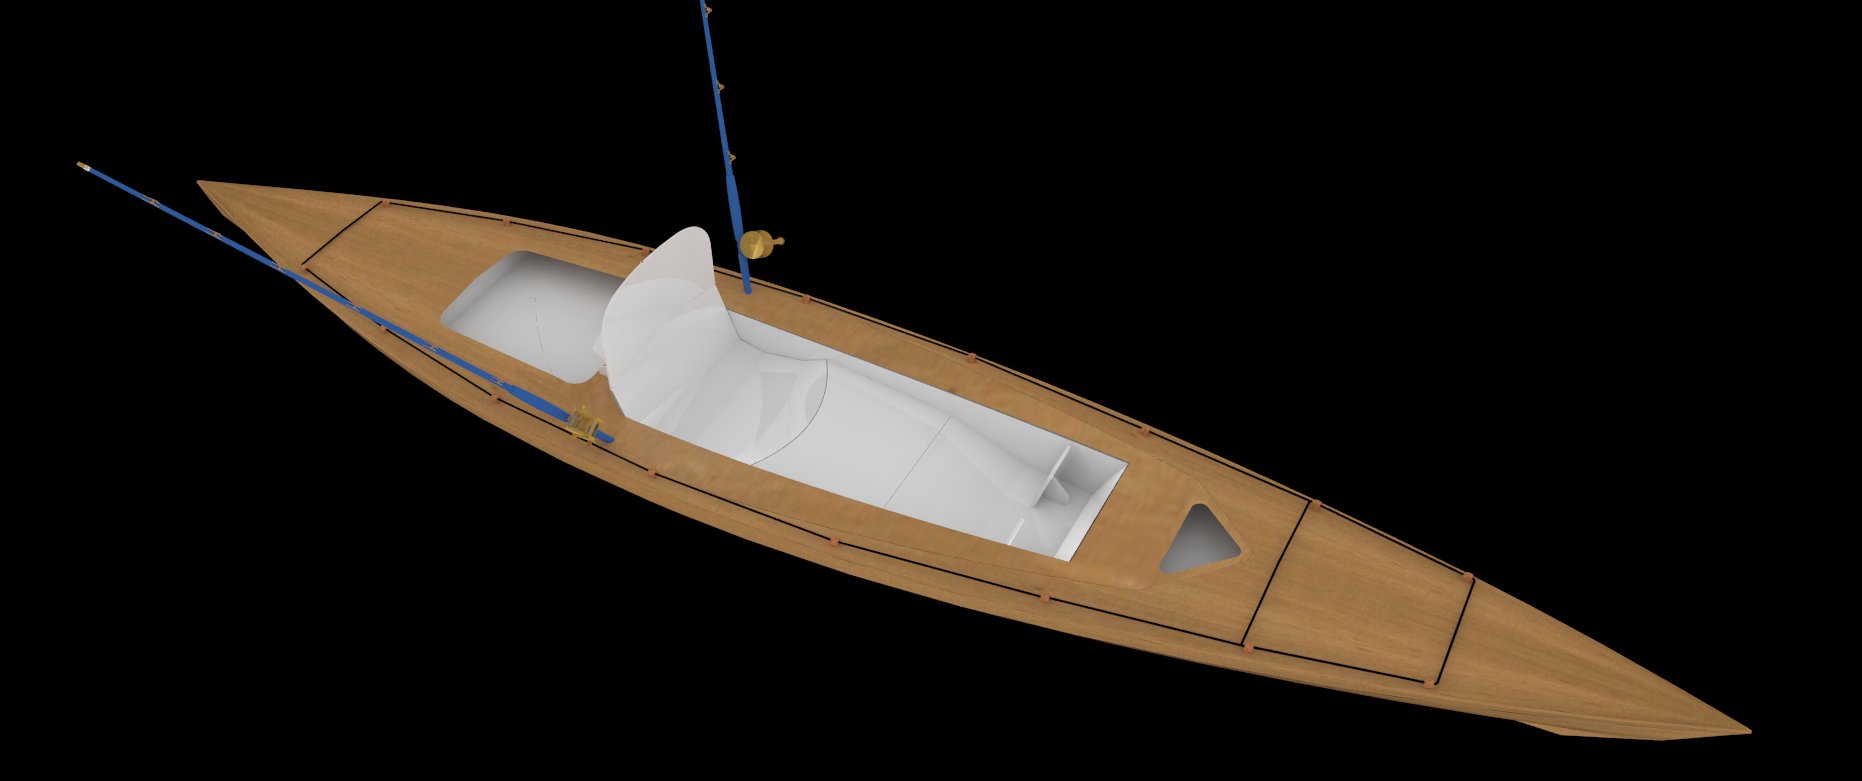 Seakayaks A Range Of Stitch Glue Kayaks Diy Kayak Plans